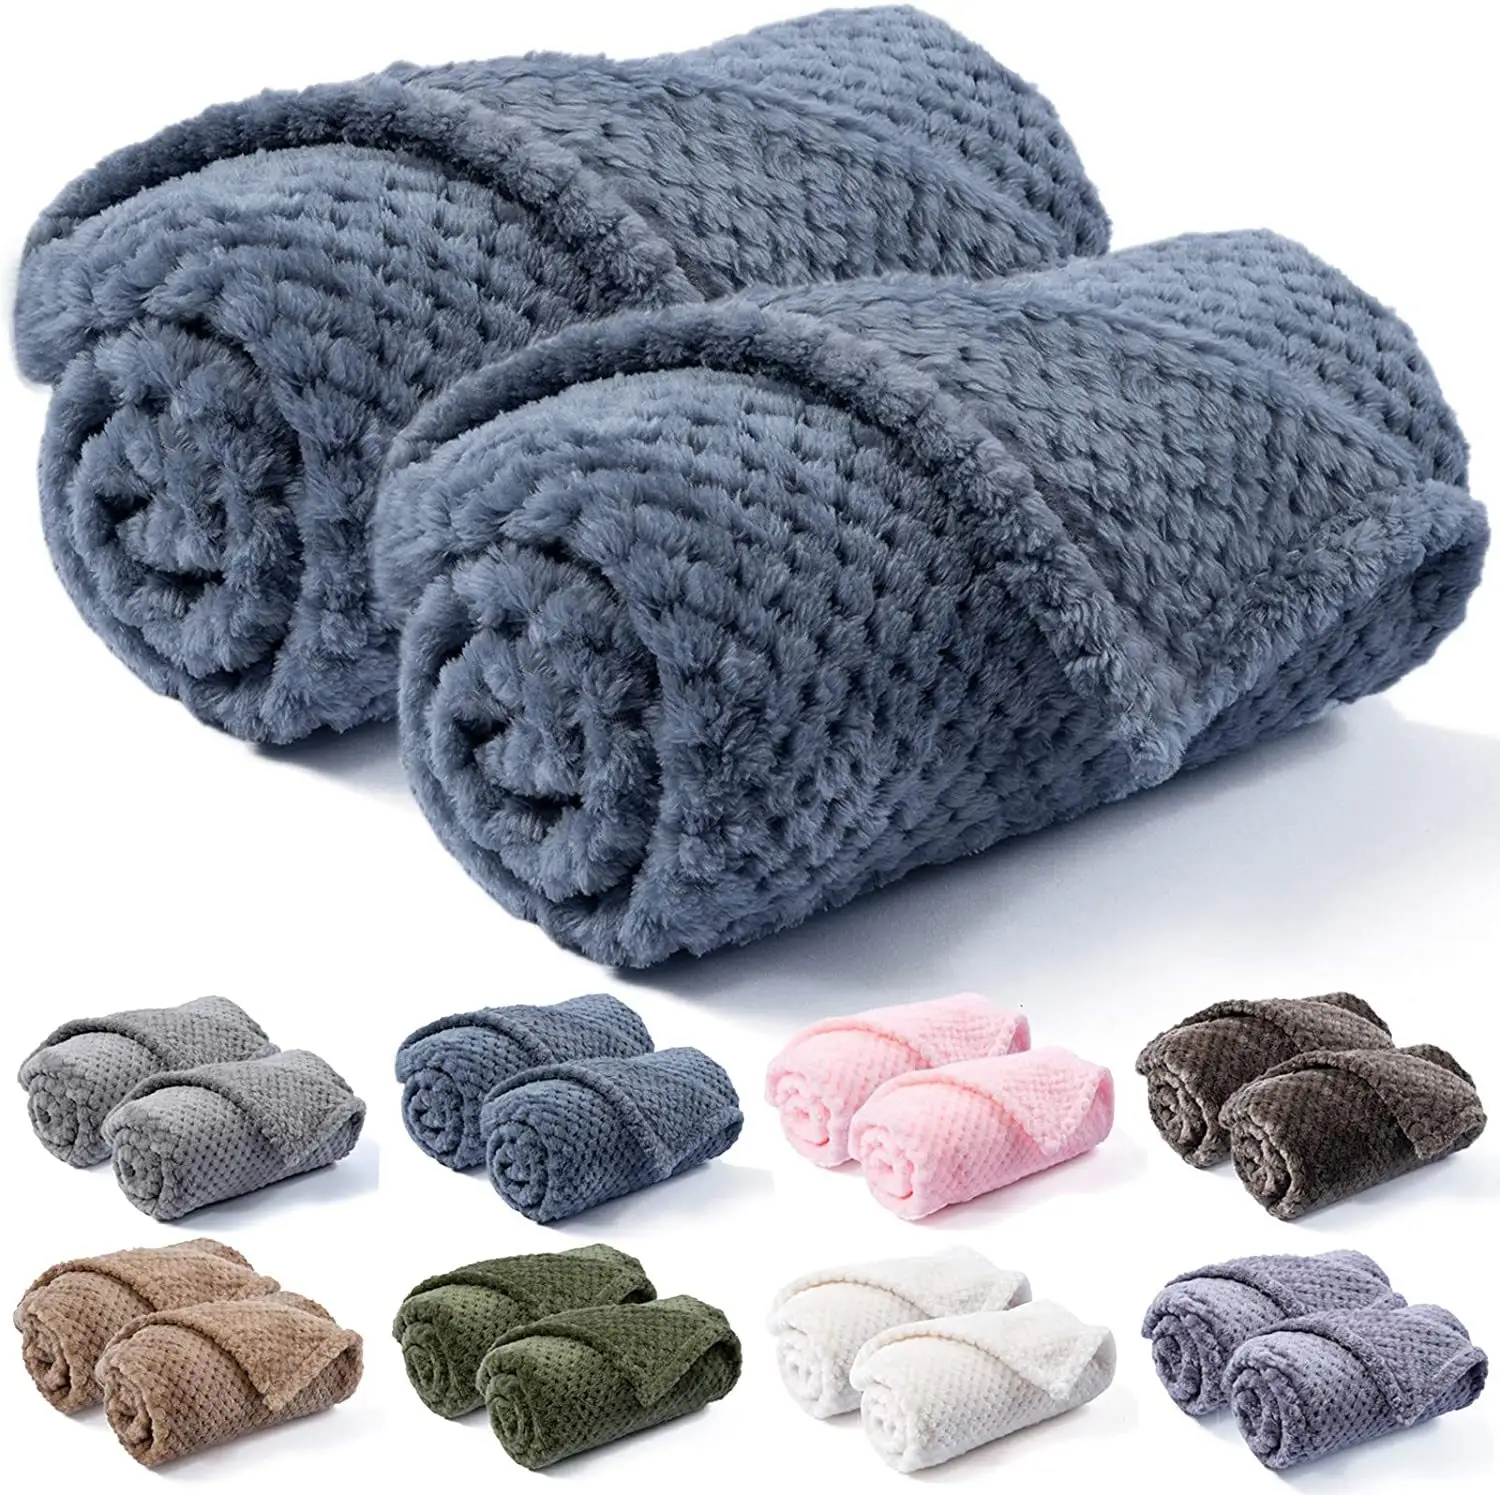 Cobertor de cachorro de venda quente, cobertor confortável e elegante para cachorro, cobertor macio para viagem